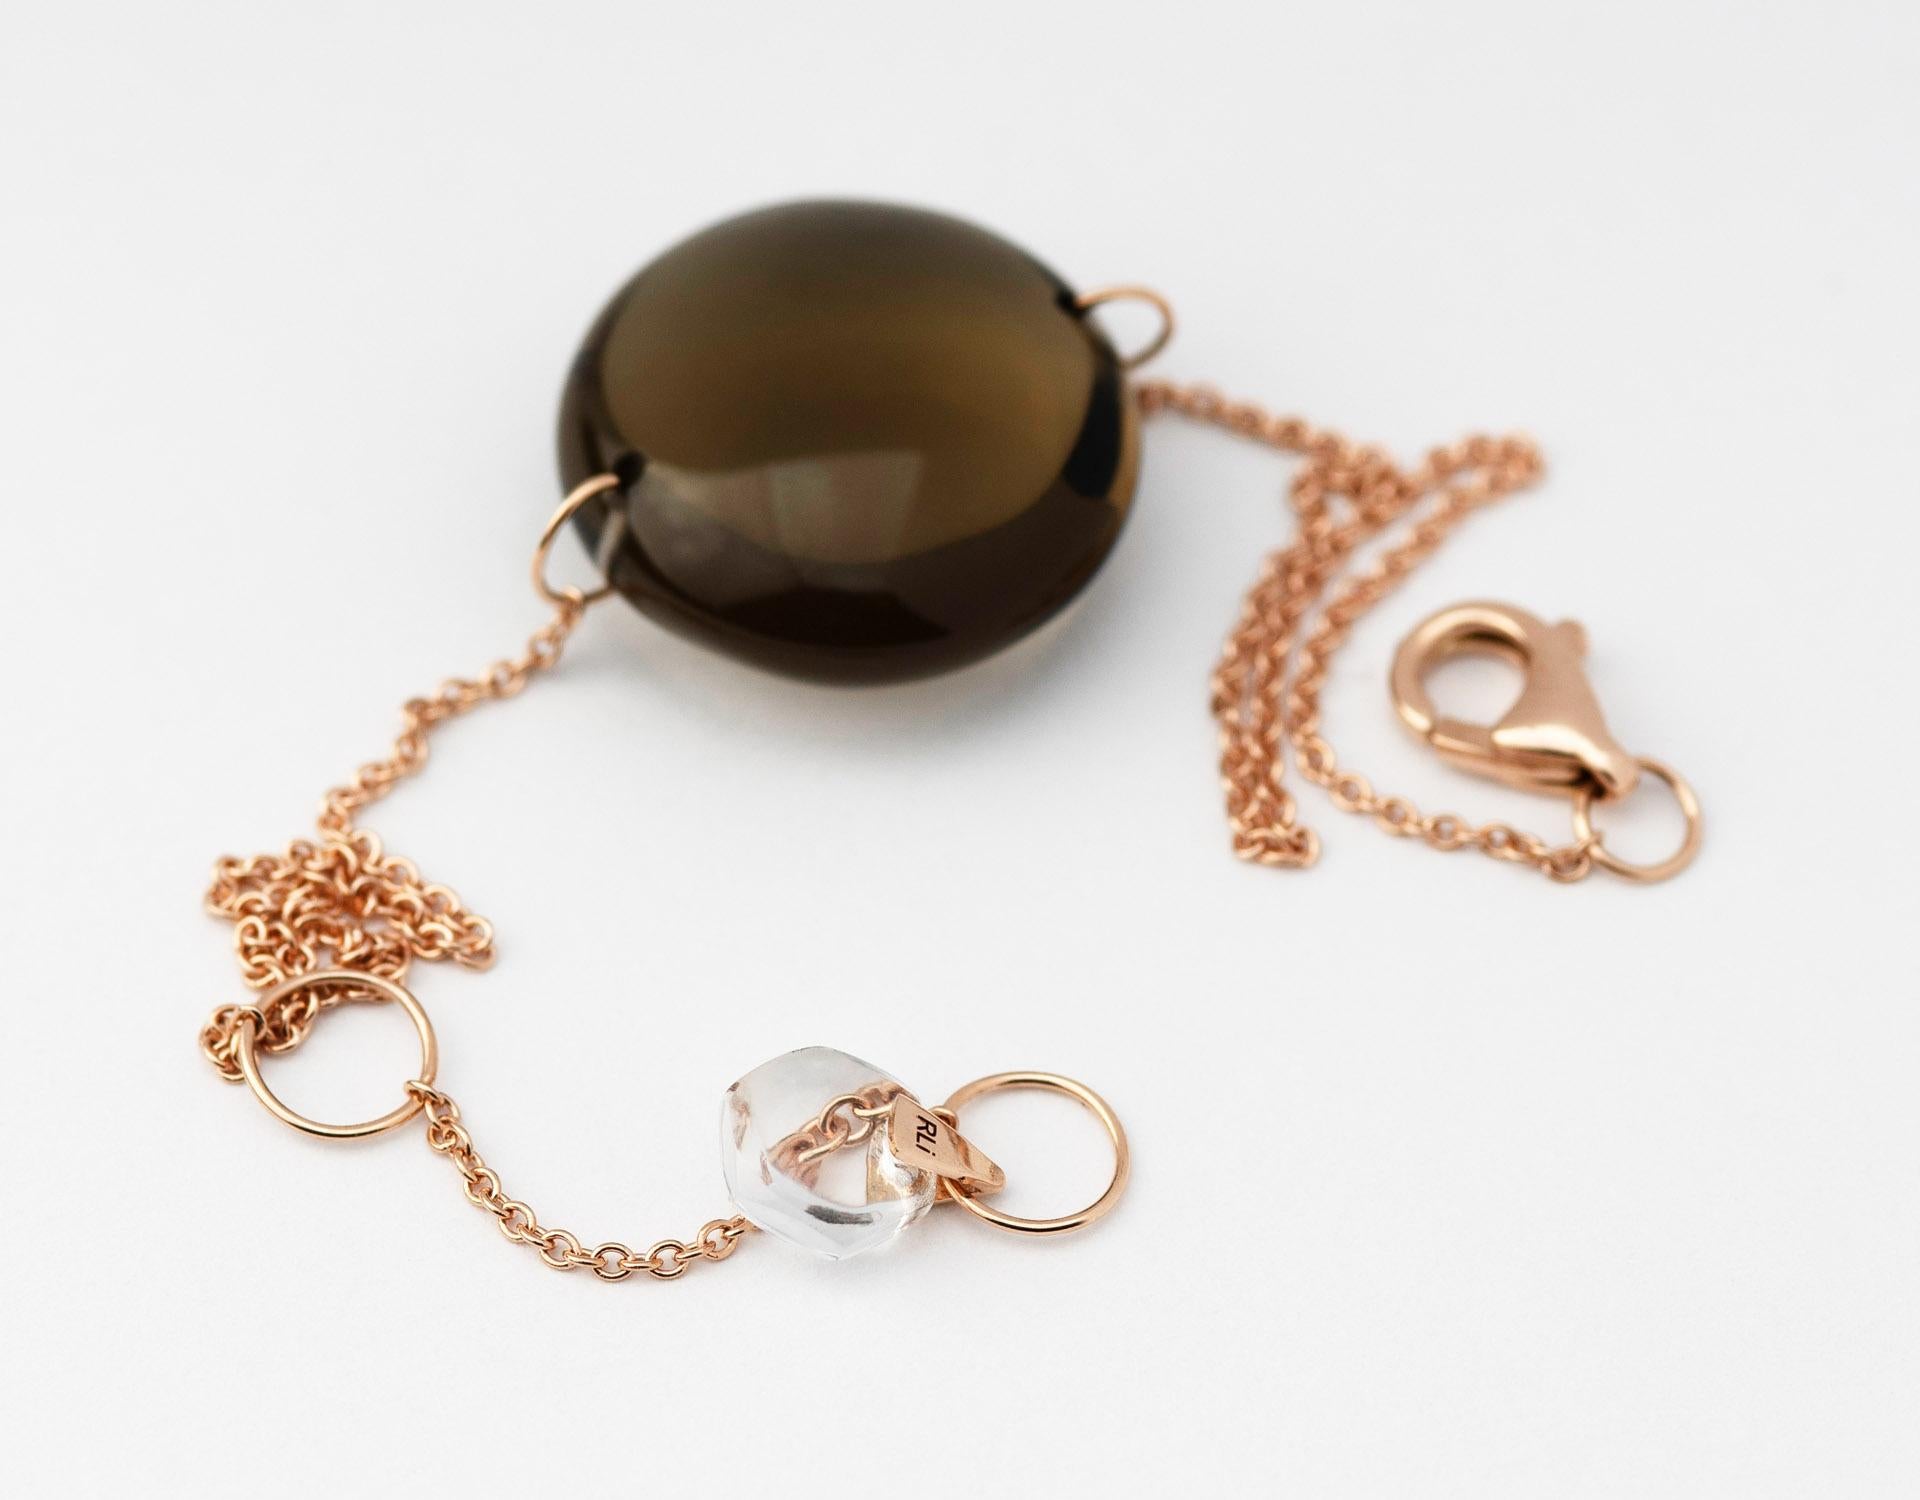 Rebecca Li conçoit la pleine conscience. 

Ce bracelet minimal contemporain est issu de sa Collection Crystal Links. Inspiré par la géométrie sacrée, il est conçu pour nous permettre de nous souvenir de notre pouvoir intérieur. 
Des miracles se